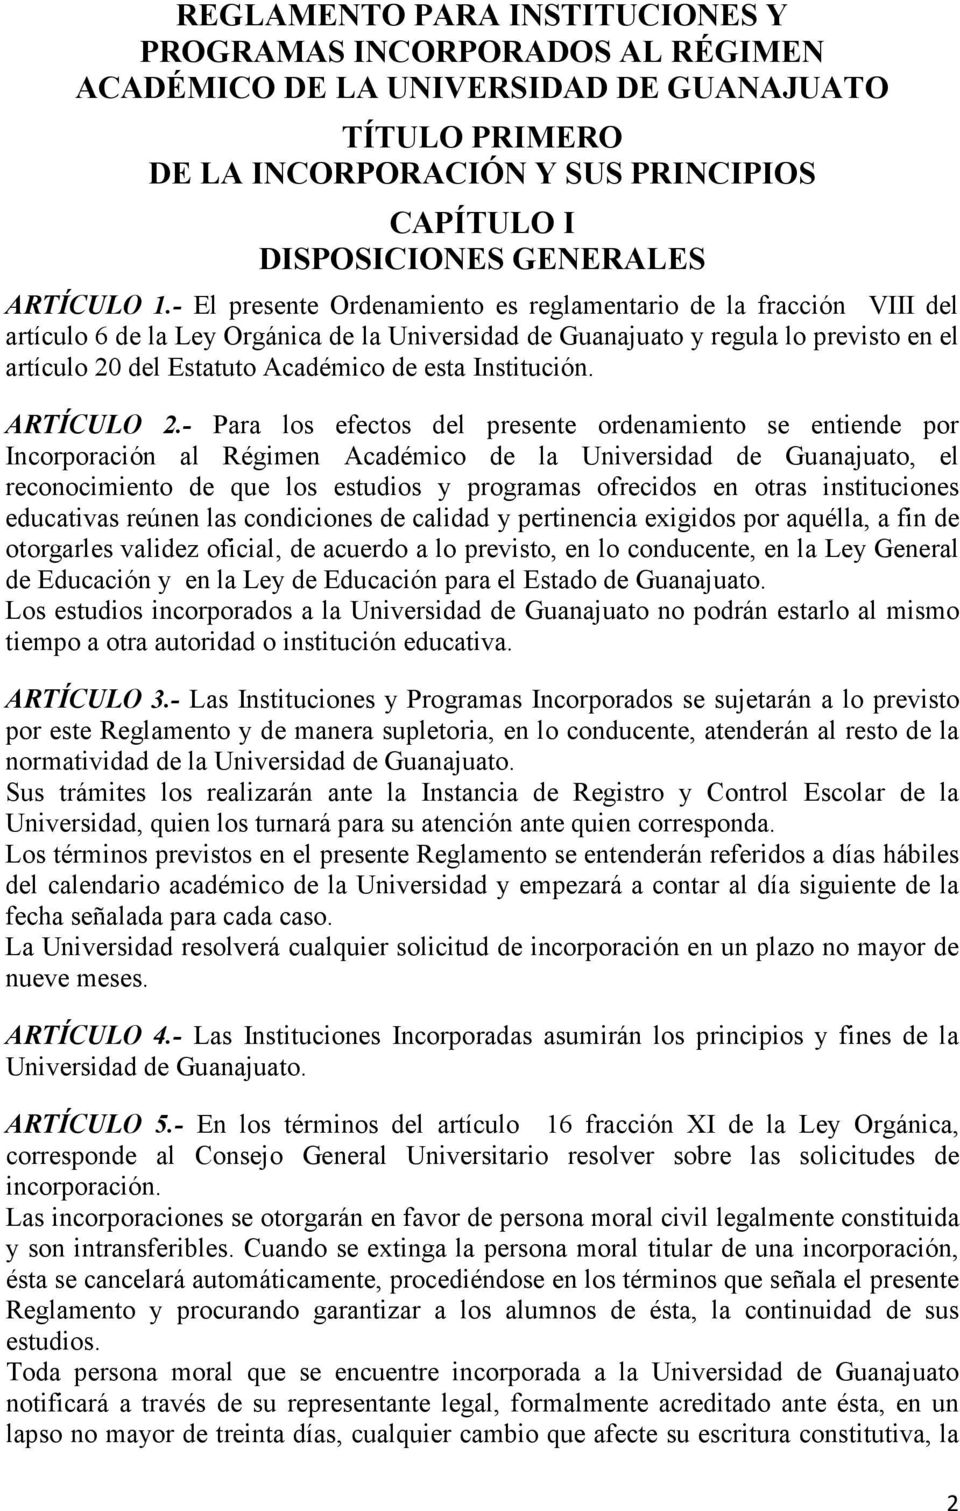 - El presente Ordenamiento es reglamentario de la fracción VIII del artículo 6 de la Ley Orgánica de la Universidad de Guanajuato y regula lo previsto en el artículo 20 del Estatuto Académico de esta